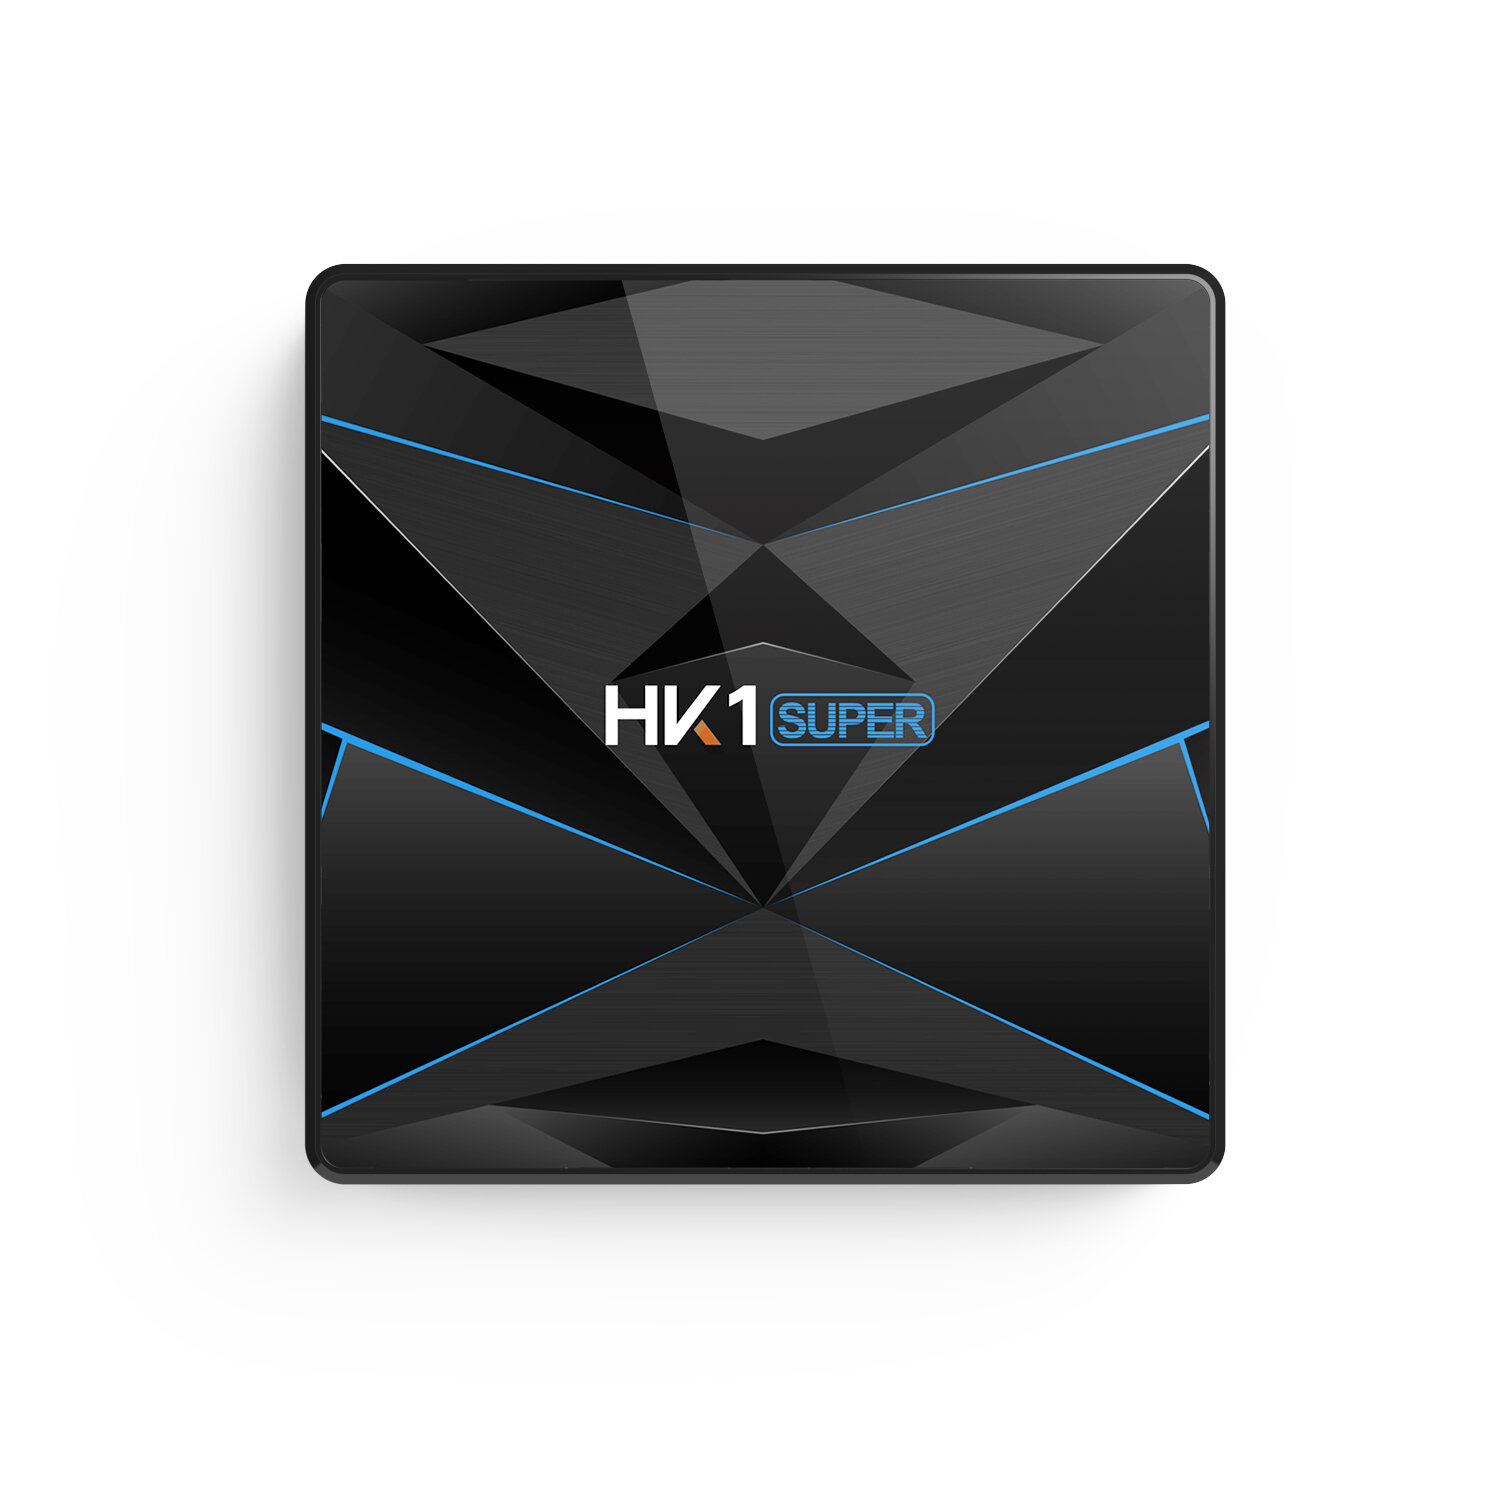 

HK1 Super RK3318 4 ГБ RAM 64GB ПЗУ 5G WIFI Bluetooth 4.0 Android 9.0 4K ТВ Коробка